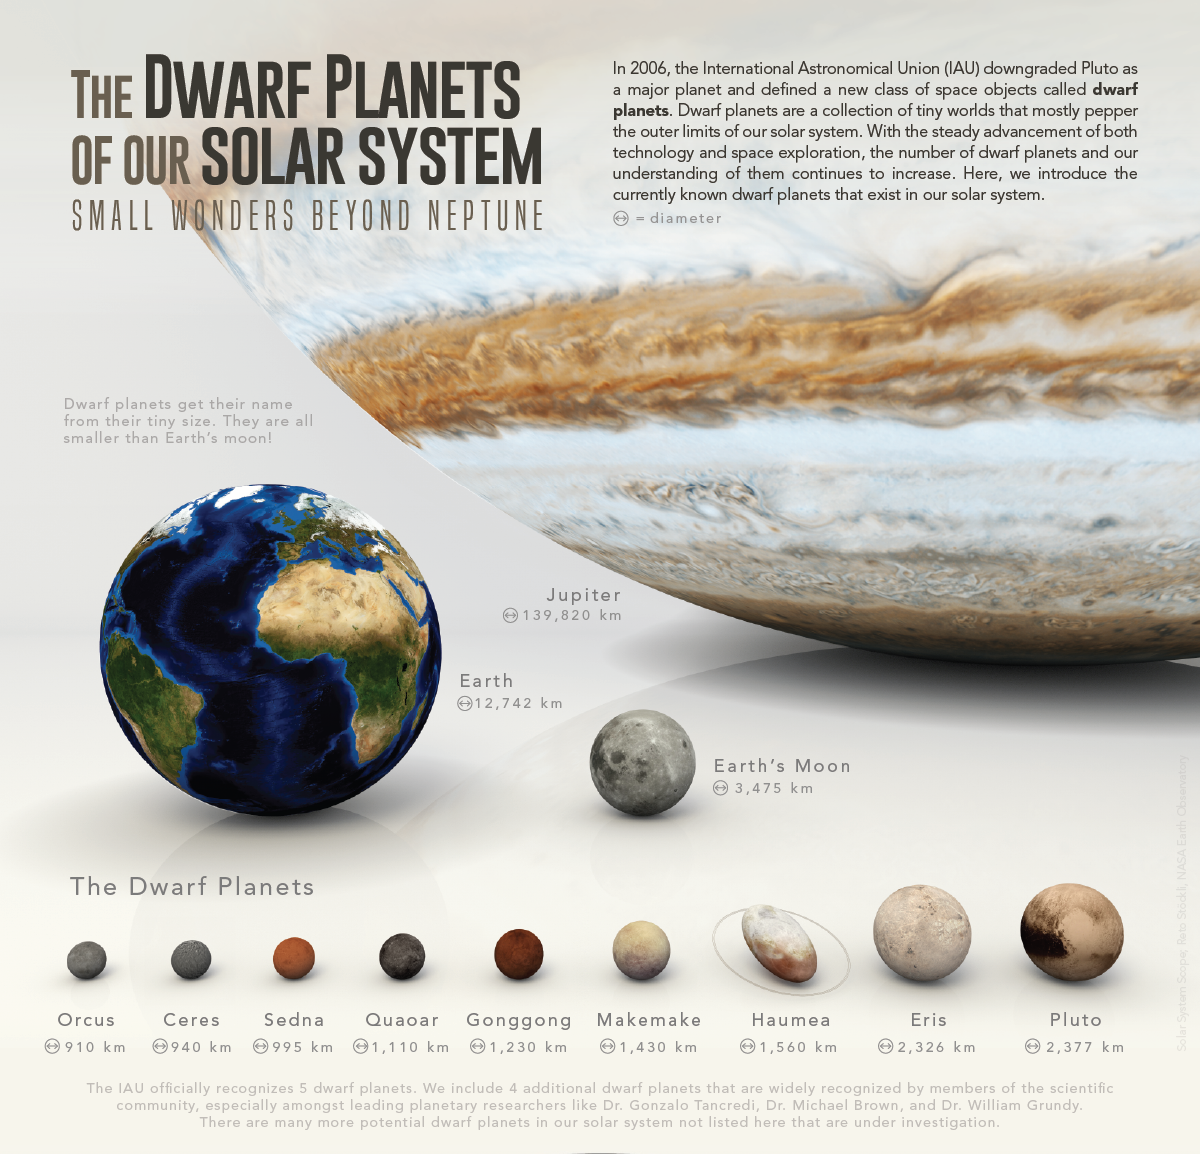 Una introducción visual a los planetas enanos de nuestro sistema solar